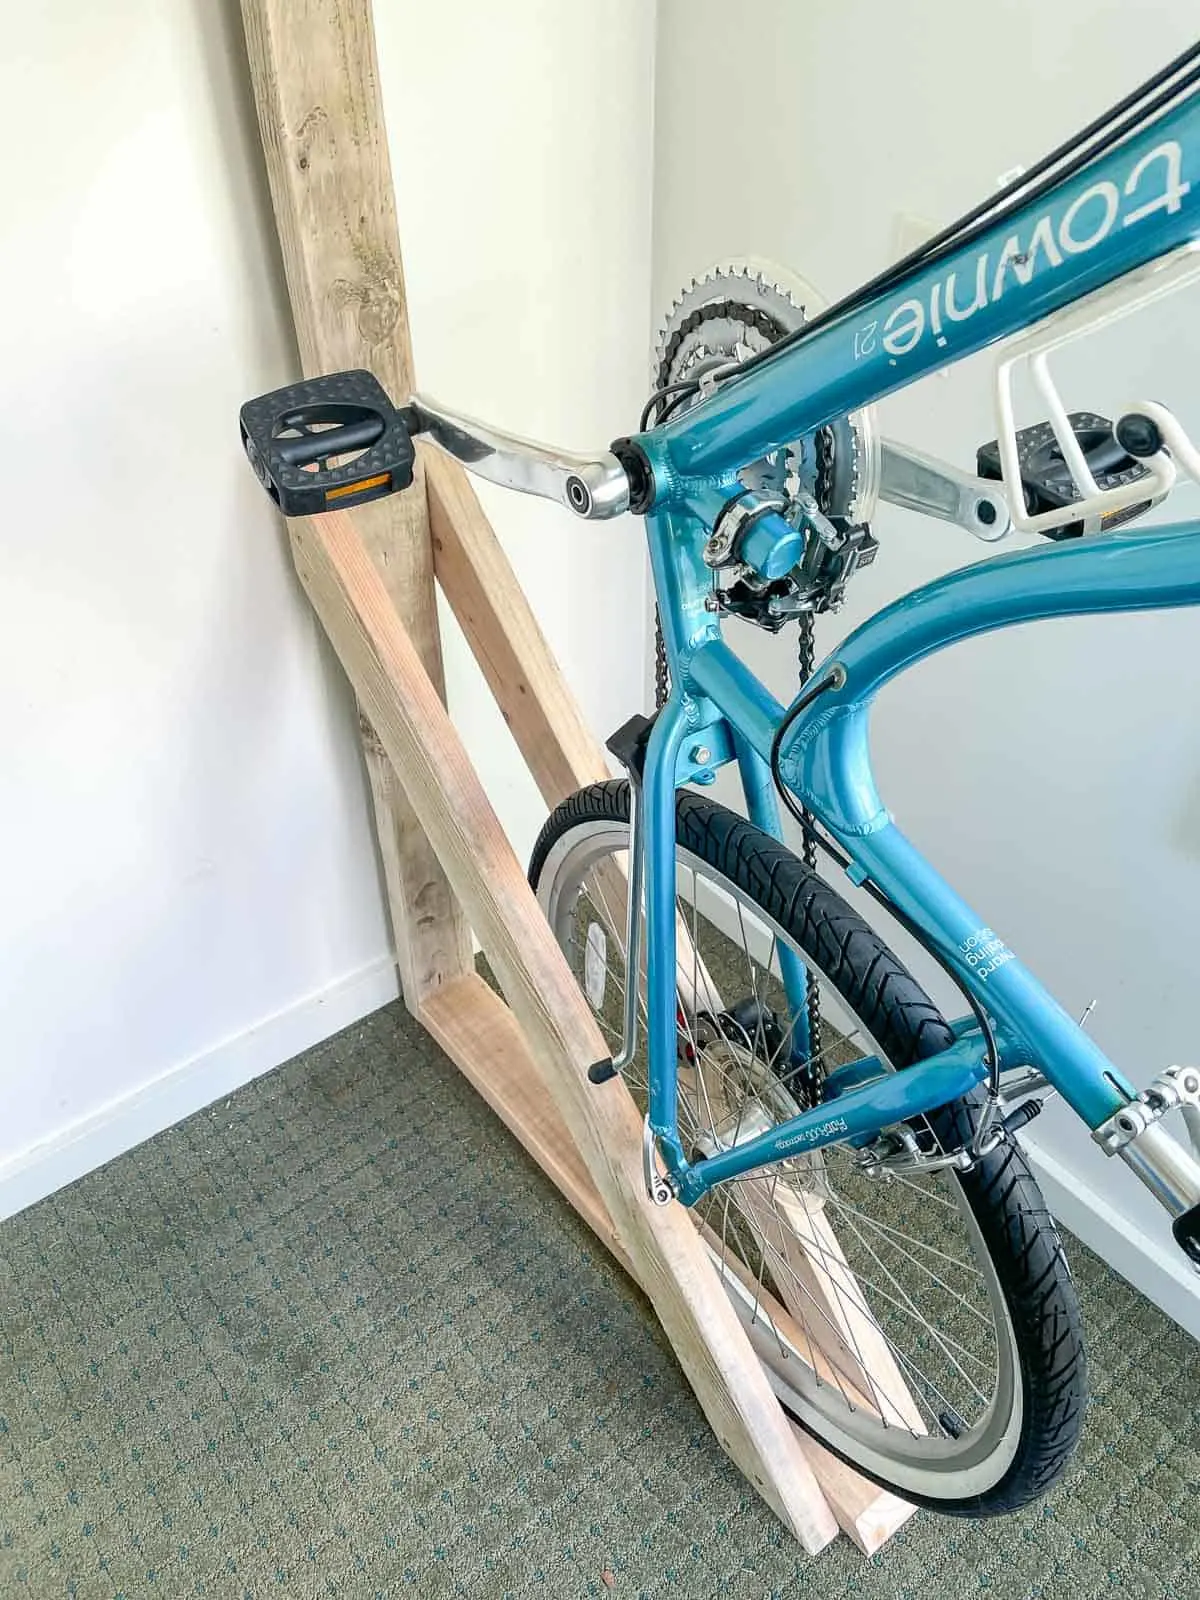 DIY wall mount bike rack with bottom stabilizer